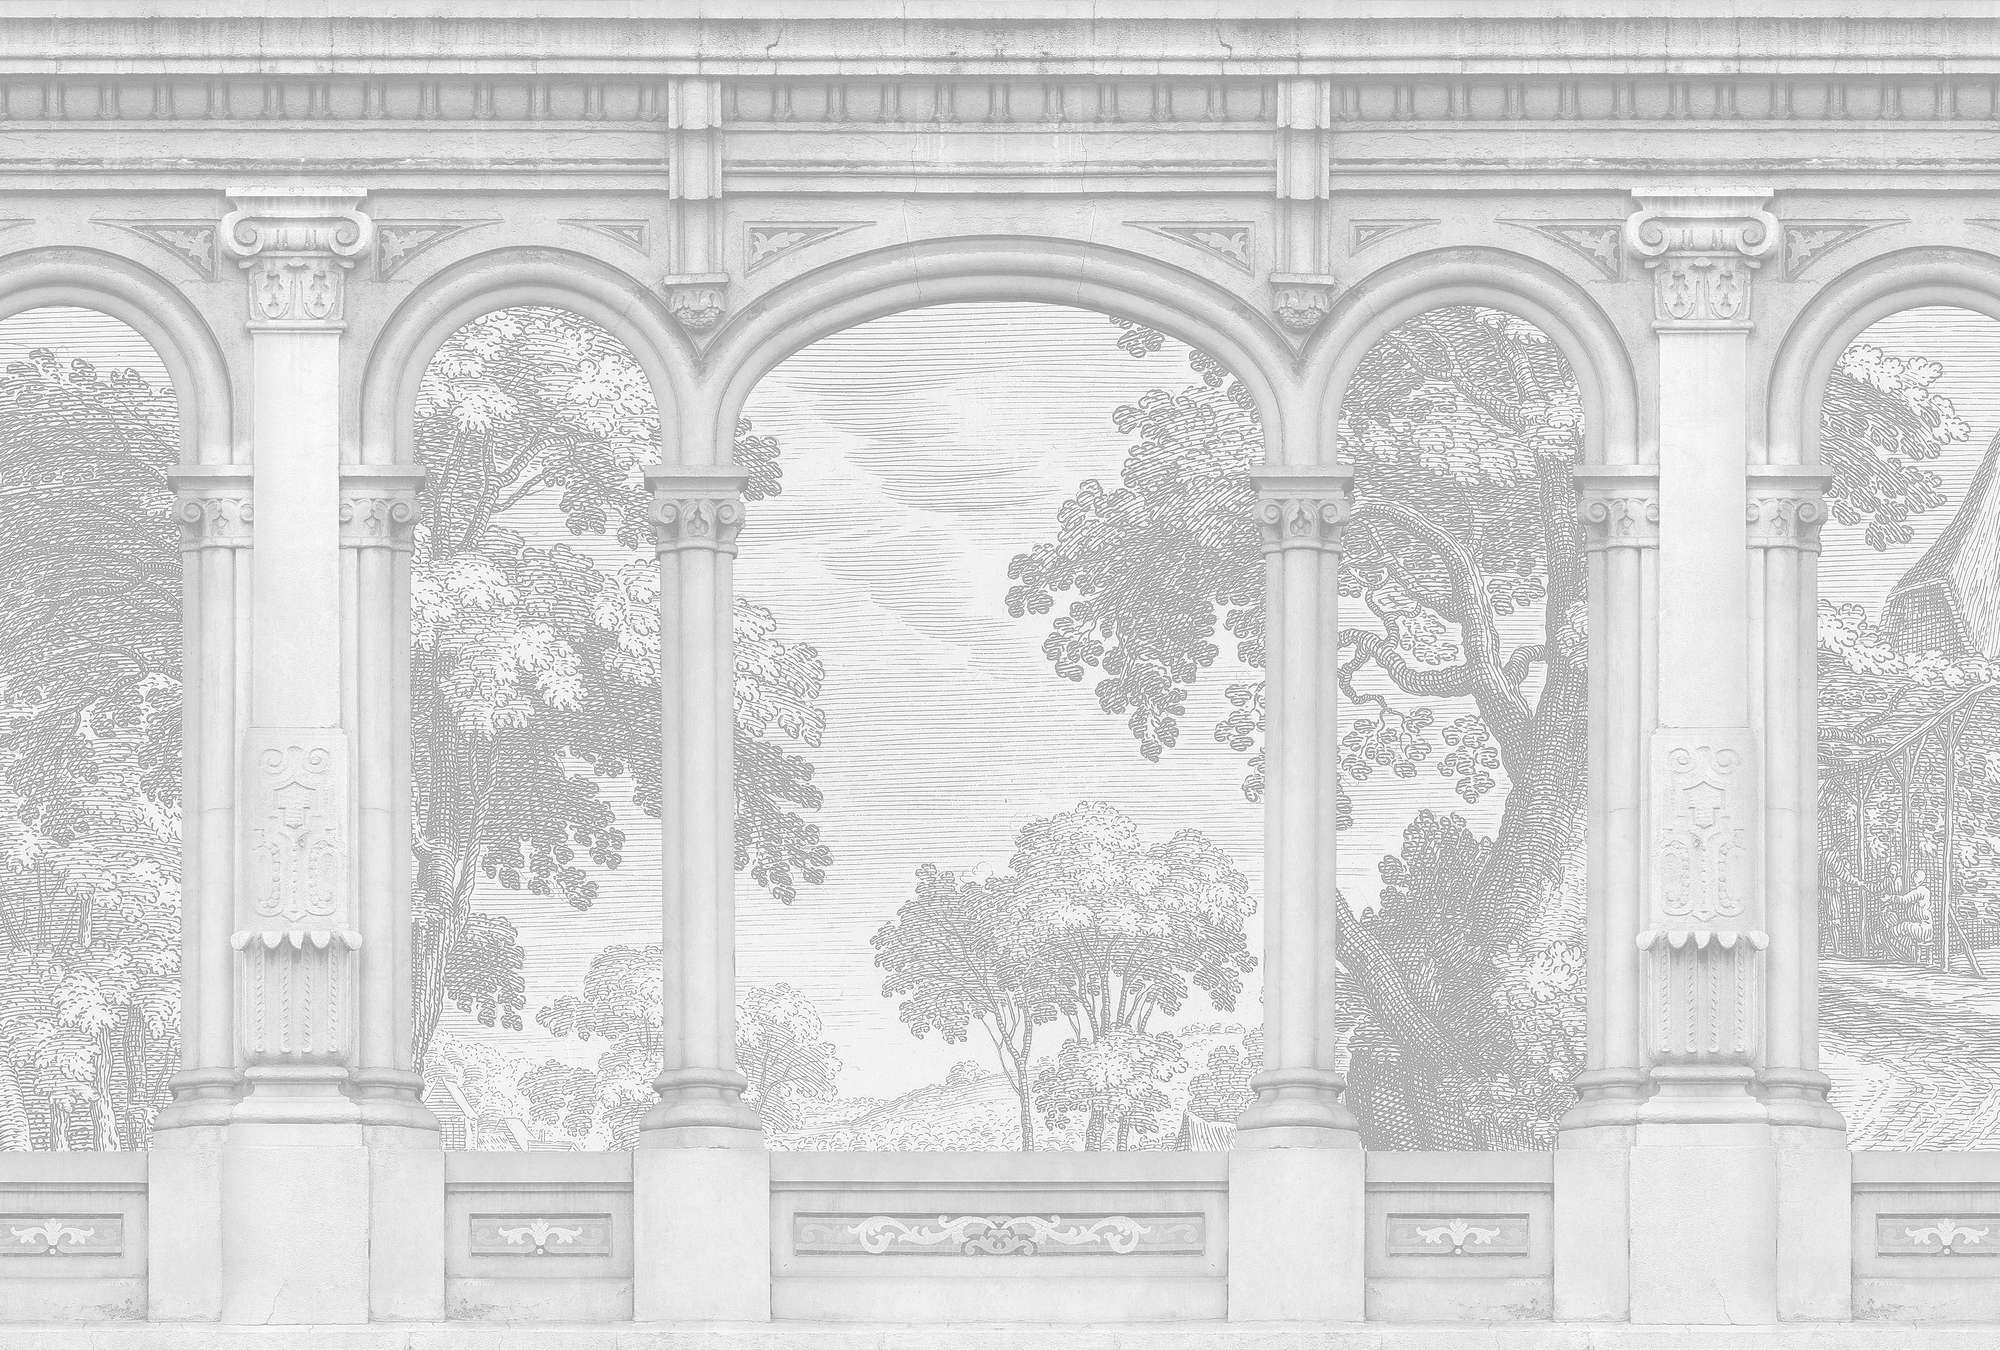             Roma 1 - Carta da parati fotografica grigia Design storico con finestra ad arco a tutto sesto
        